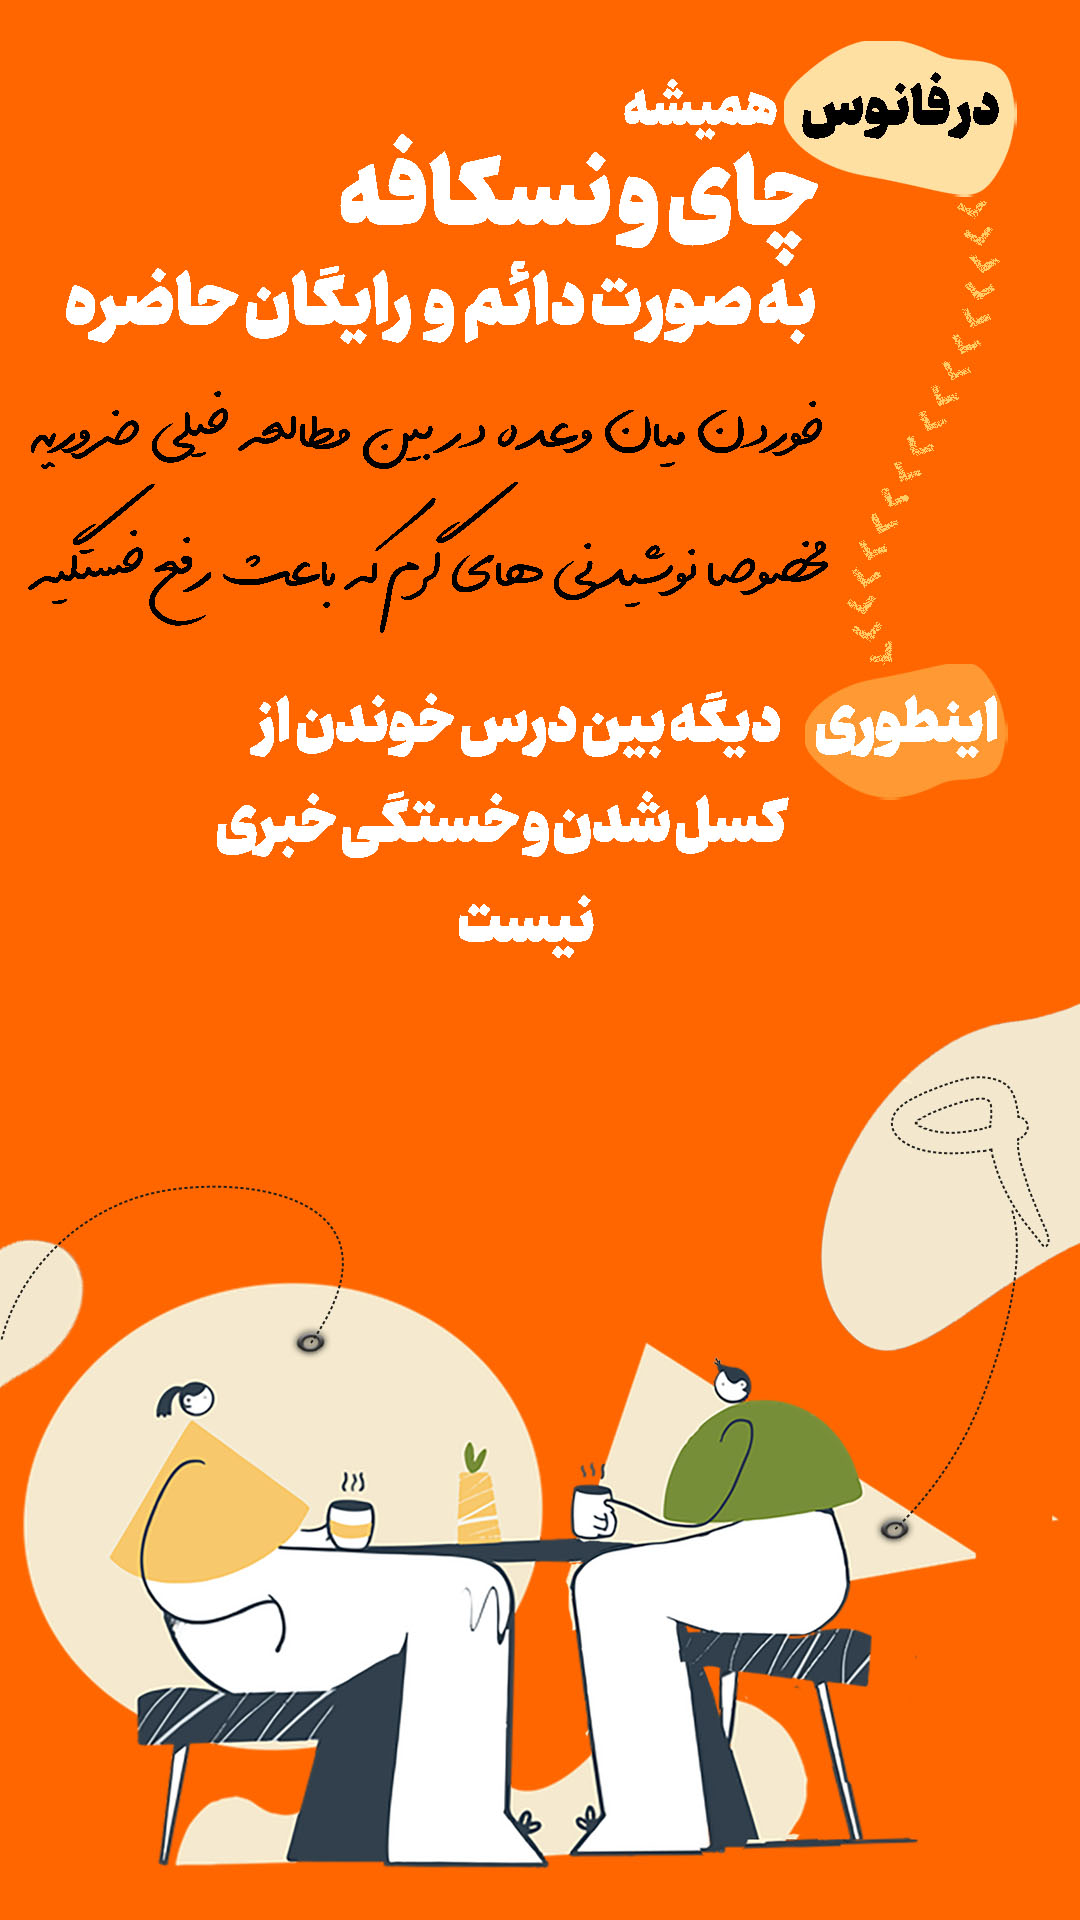 معرفی کمپ مطالعاتی شیراز9